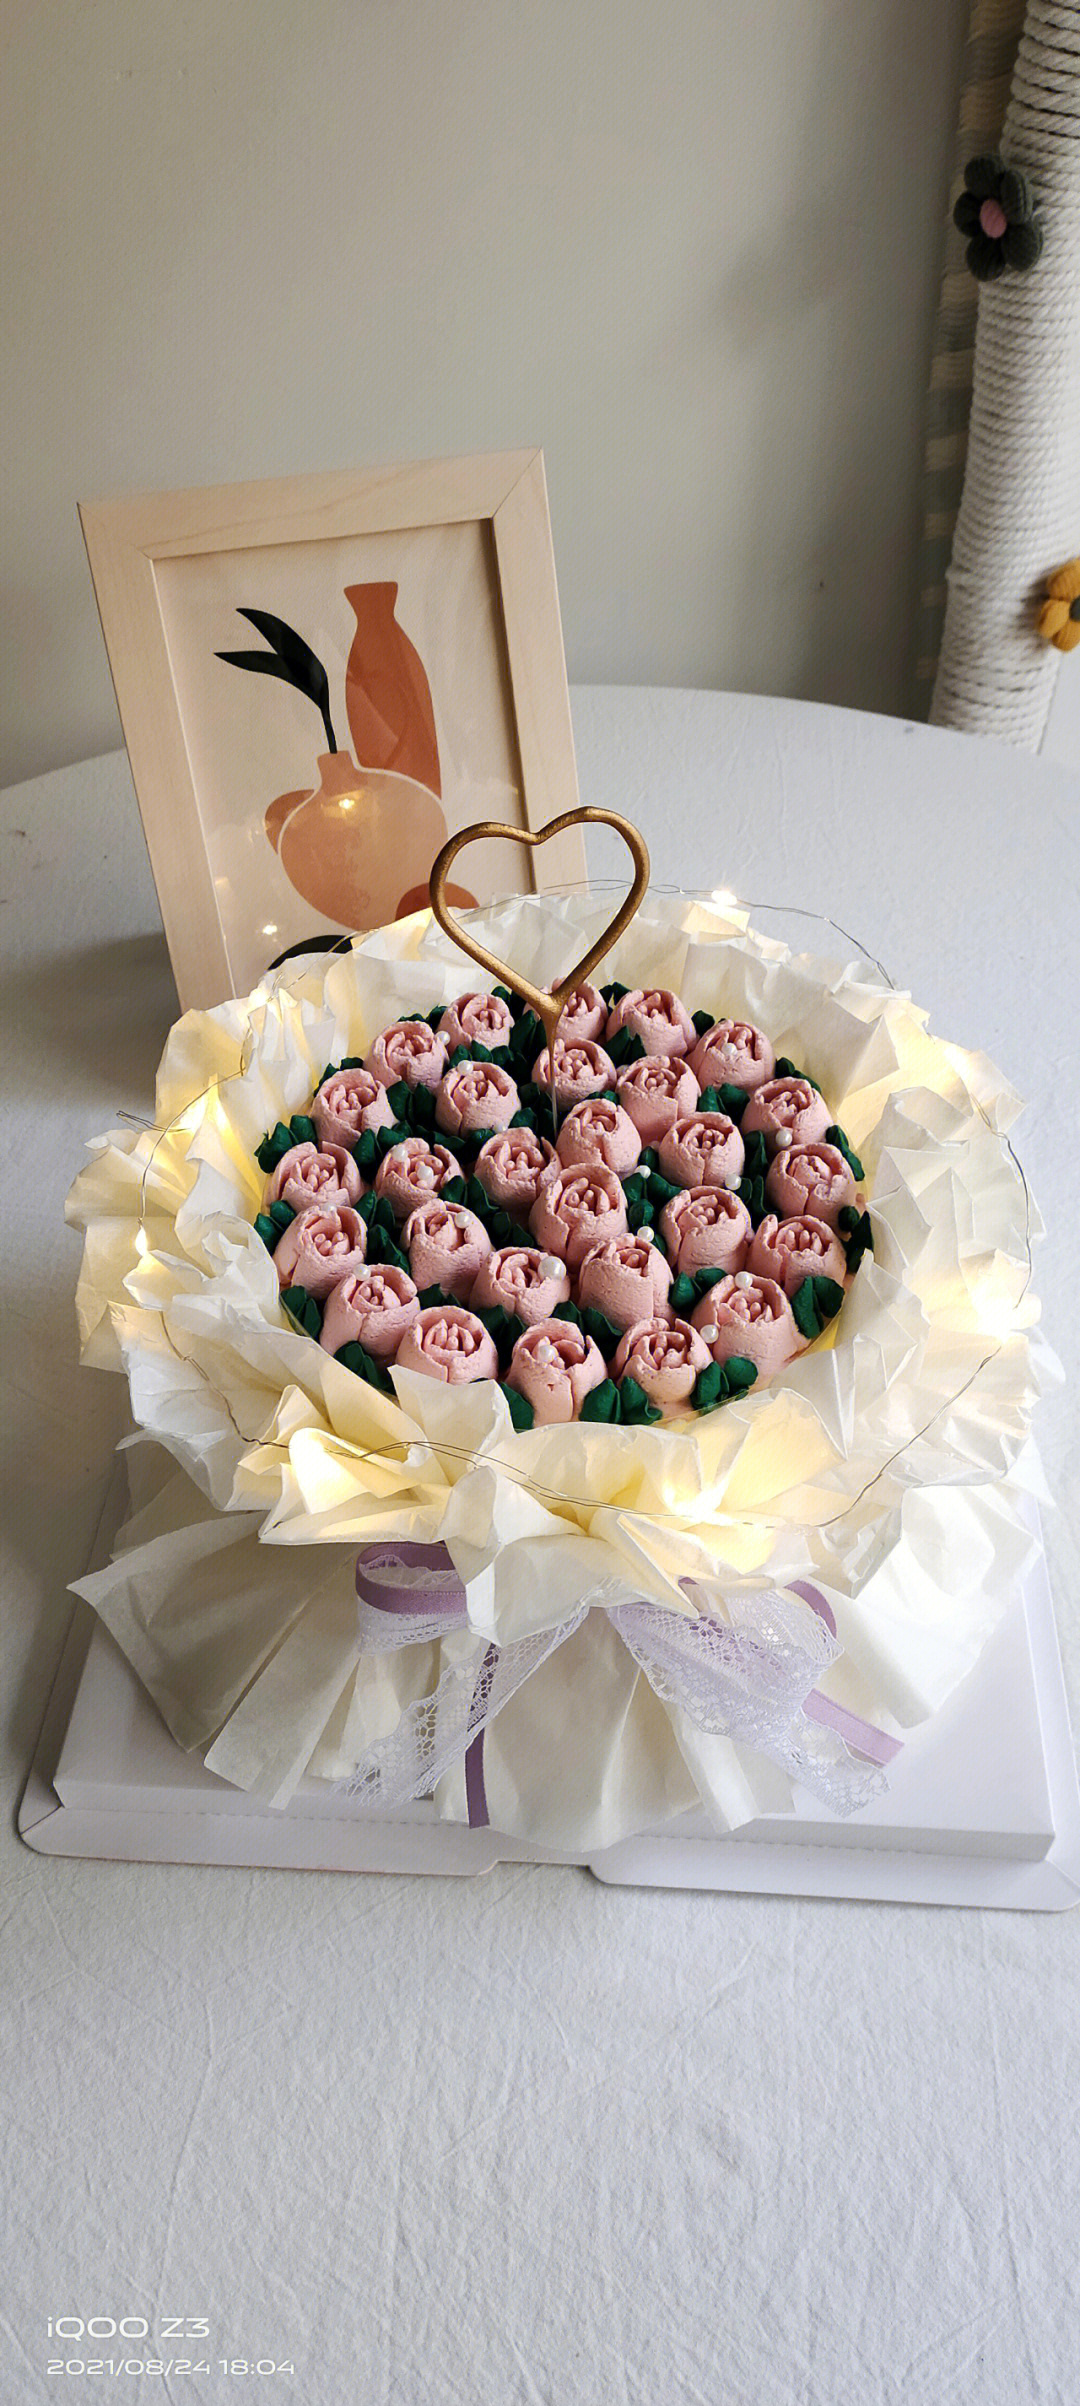 仙女花束蛋糕女孩子生日蛋糕鲜花蛋糕